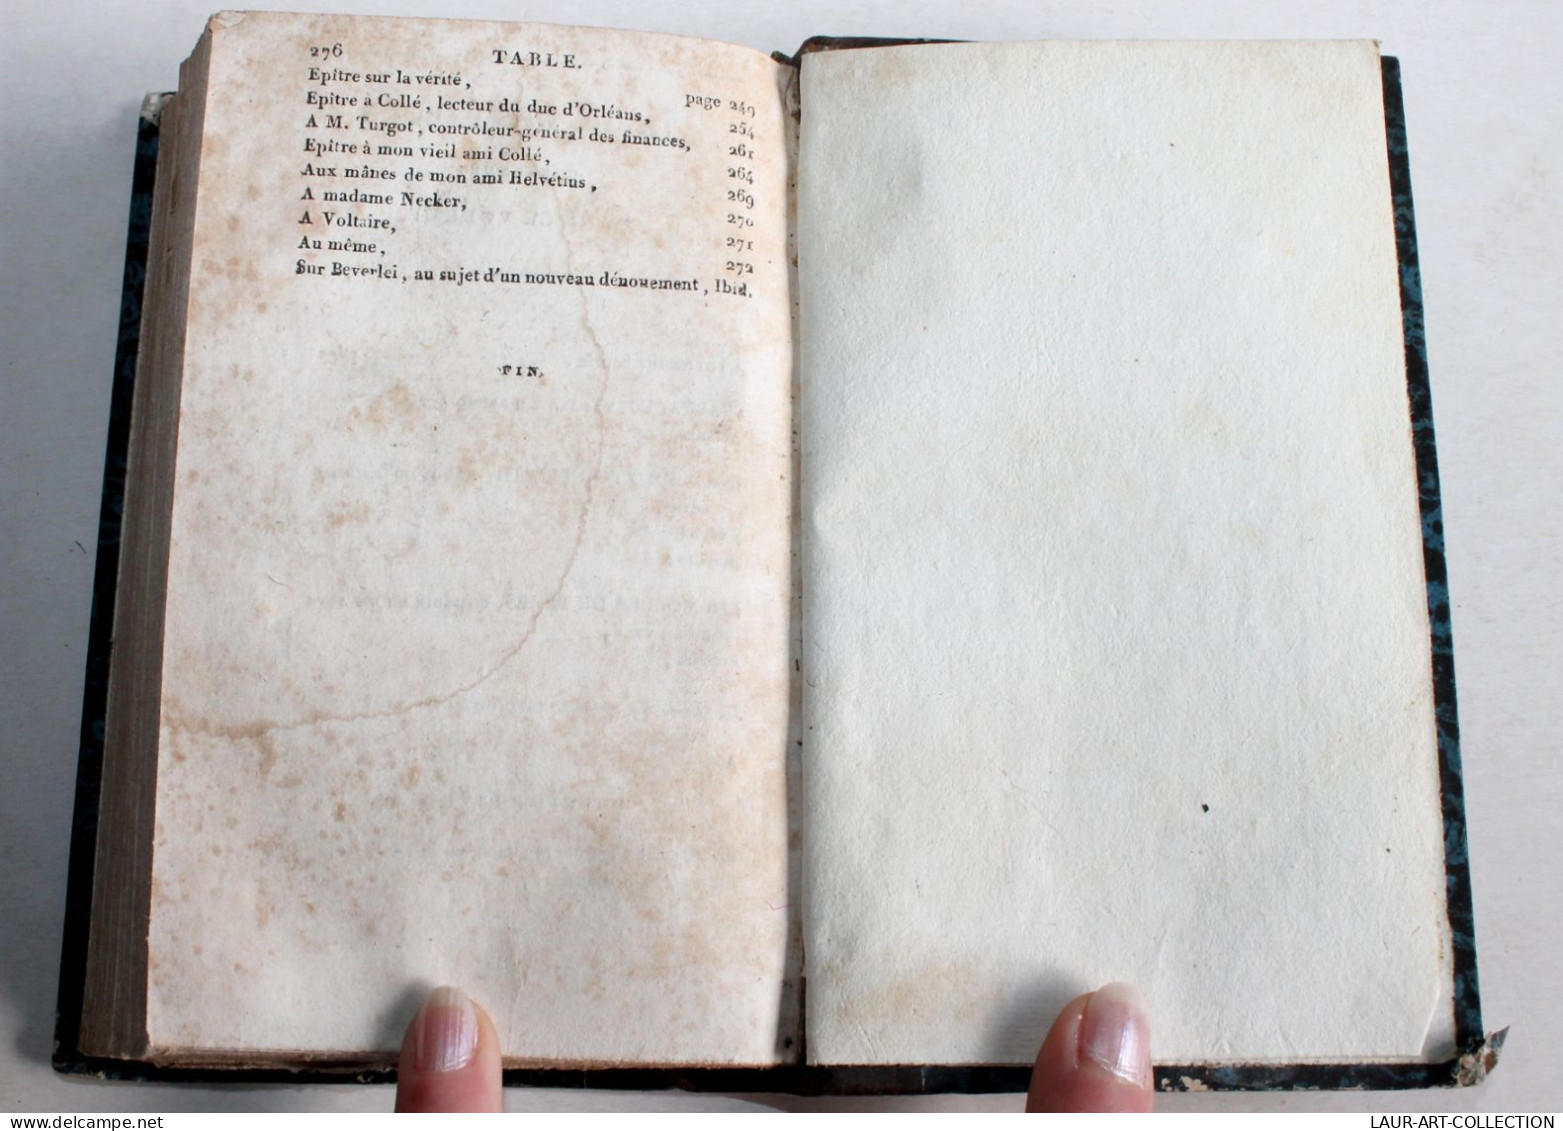 PIECE DE THEATRE OEUVRES CHOISIES DE SAURIN EDITION STEREOTYPE 1820 FIRMIN DIDOT / ANCIEN LIVRE XIXe SIECLE (1803.100) - Autores Franceses